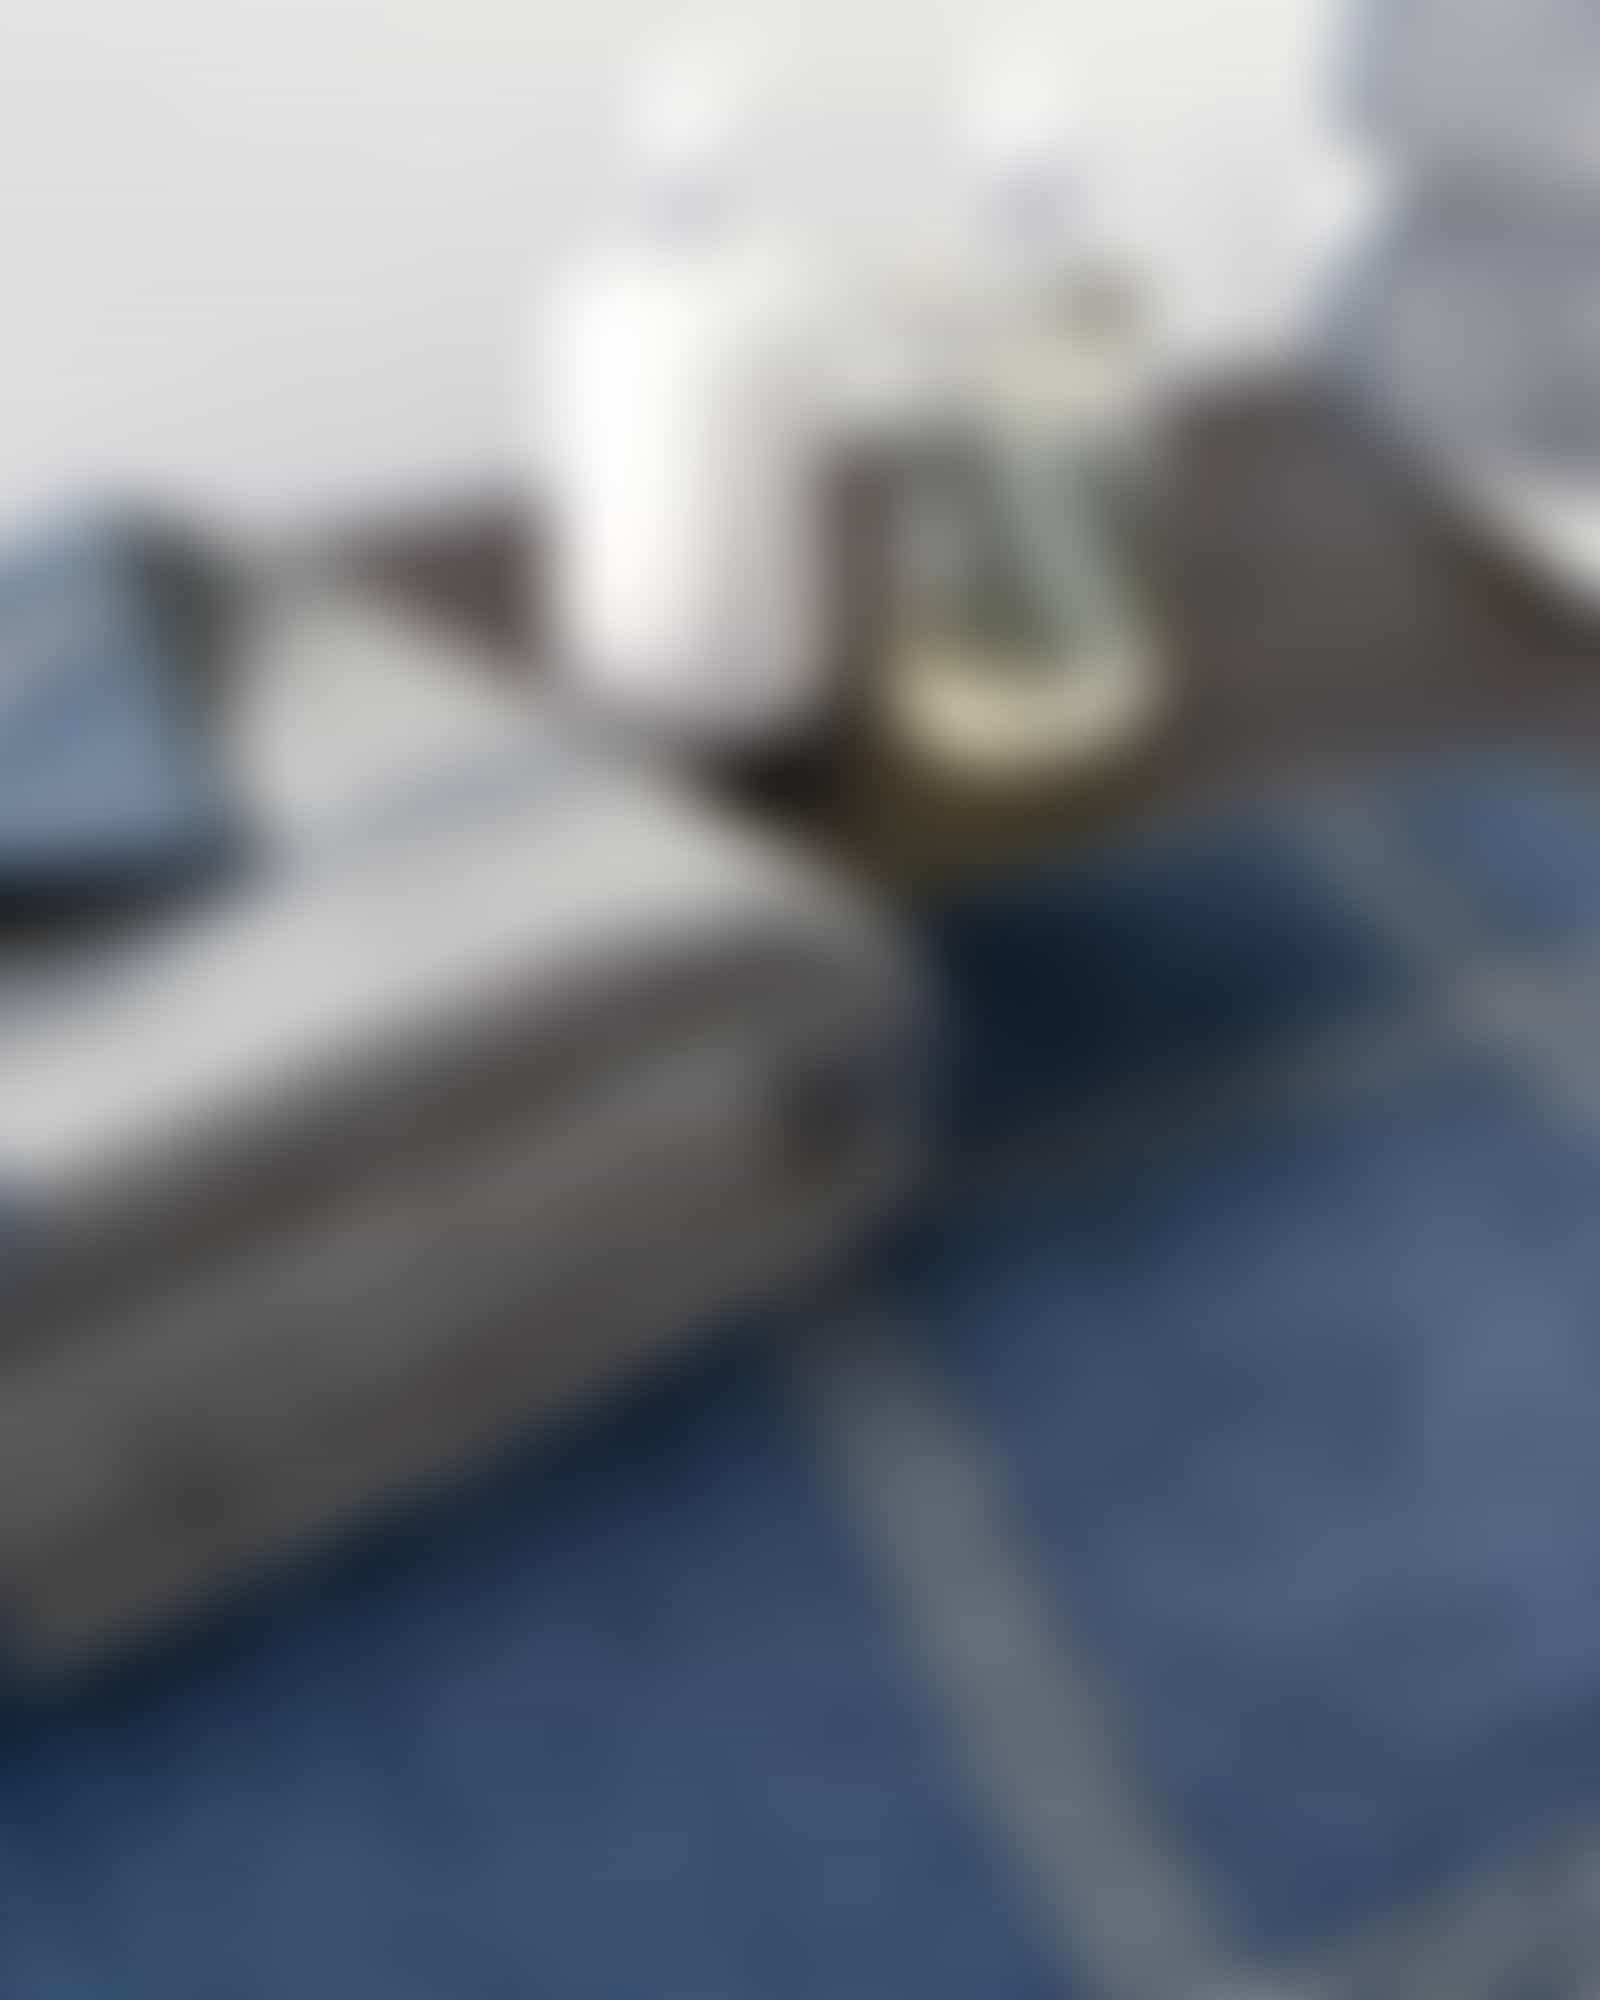 Cawö - Luxury Home Two-Tone 590 - Farbe: nachtblau - 10 - Handtuch 50x100 cm